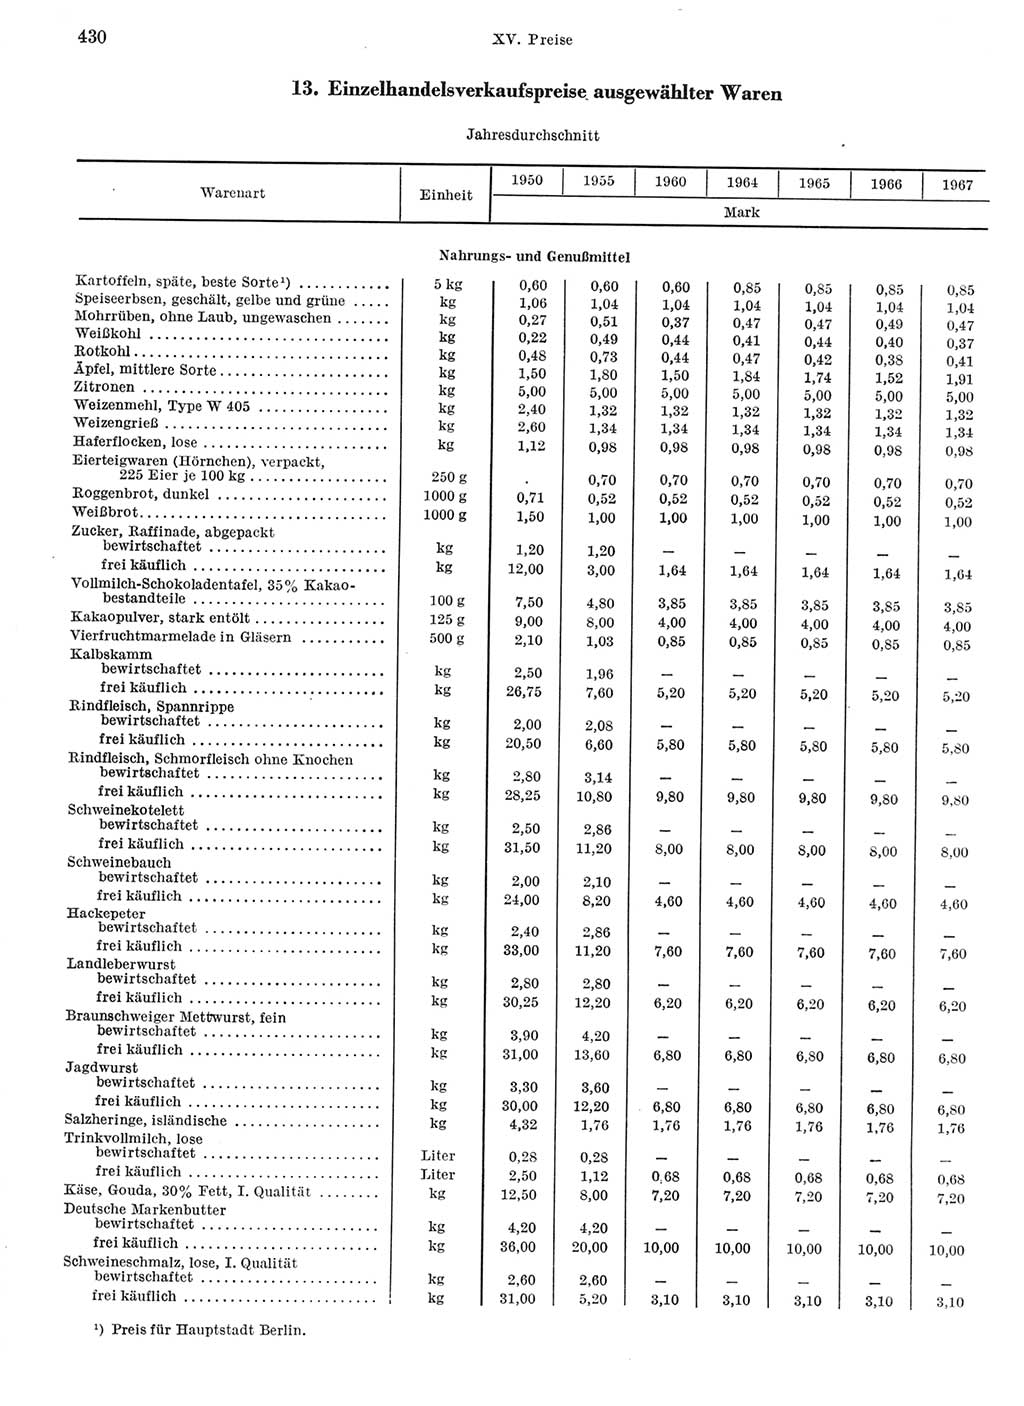 Statistisches Jahrbuch der Deutschen Demokratischen Republik (DDR) 1968, Seite 430 (Stat. Jb. DDR 1968, S. 430)